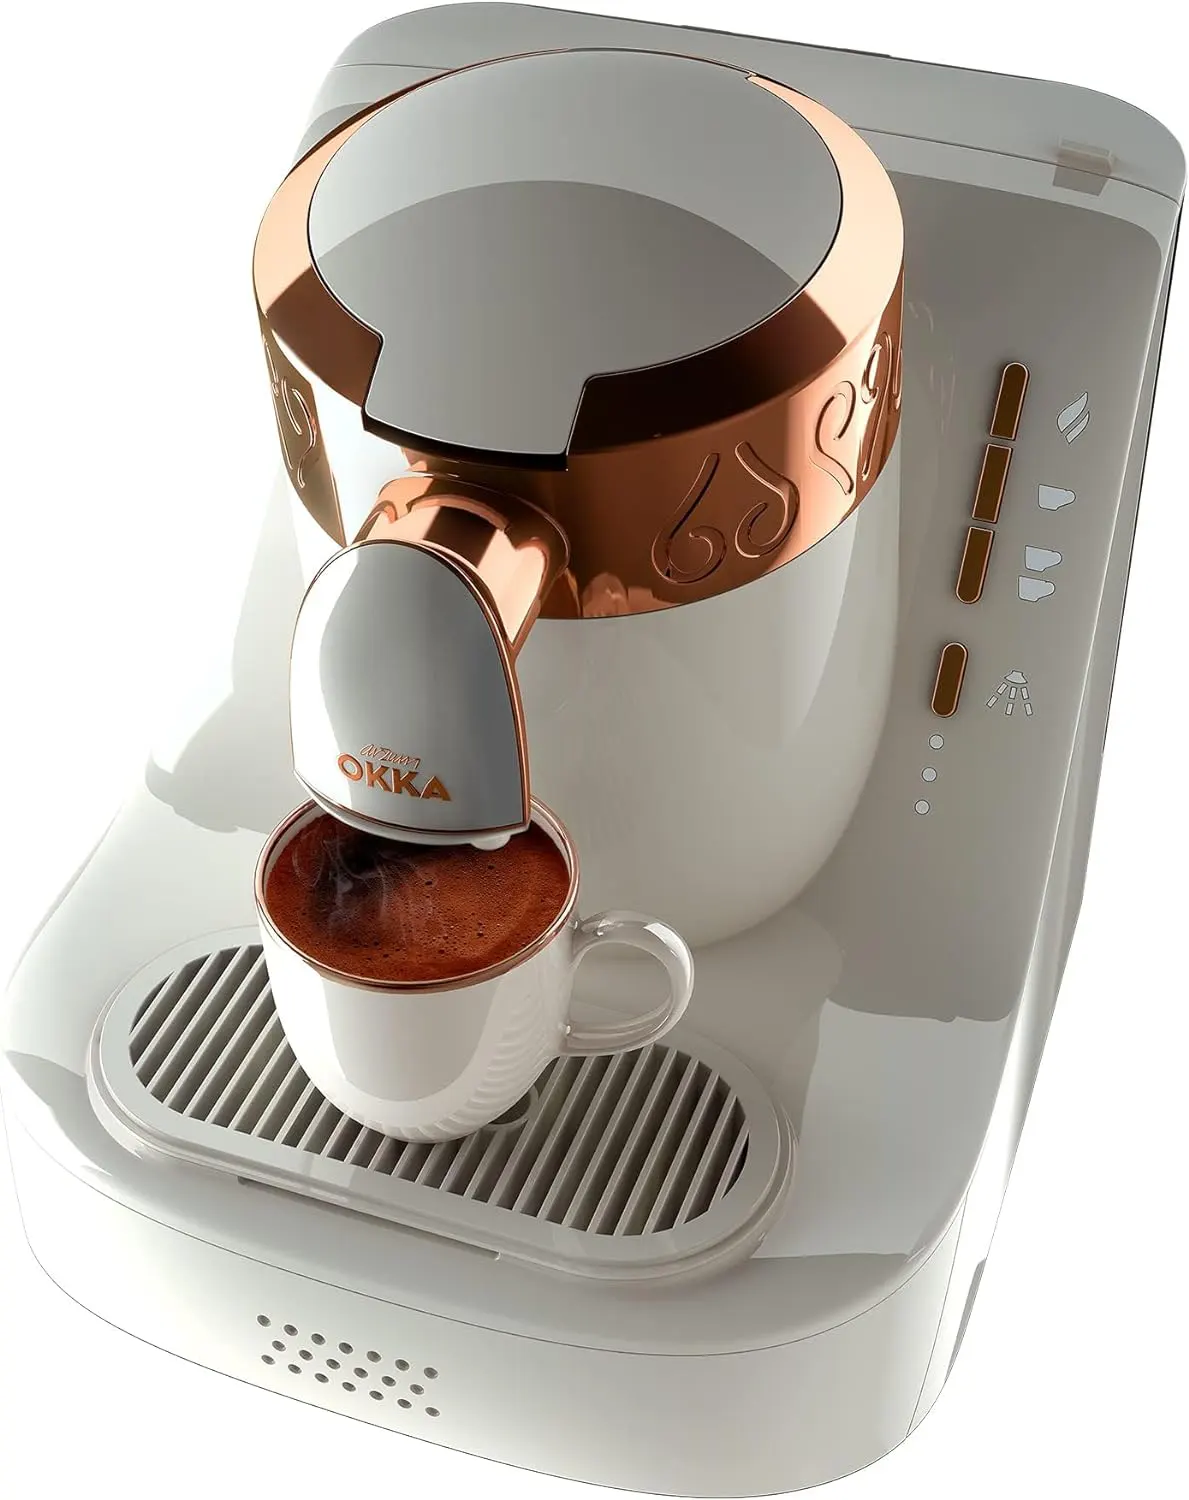 ماكينة القهوة التركي ارزوم اوكا، 710 وات، أبيض× نحاسي،OK001